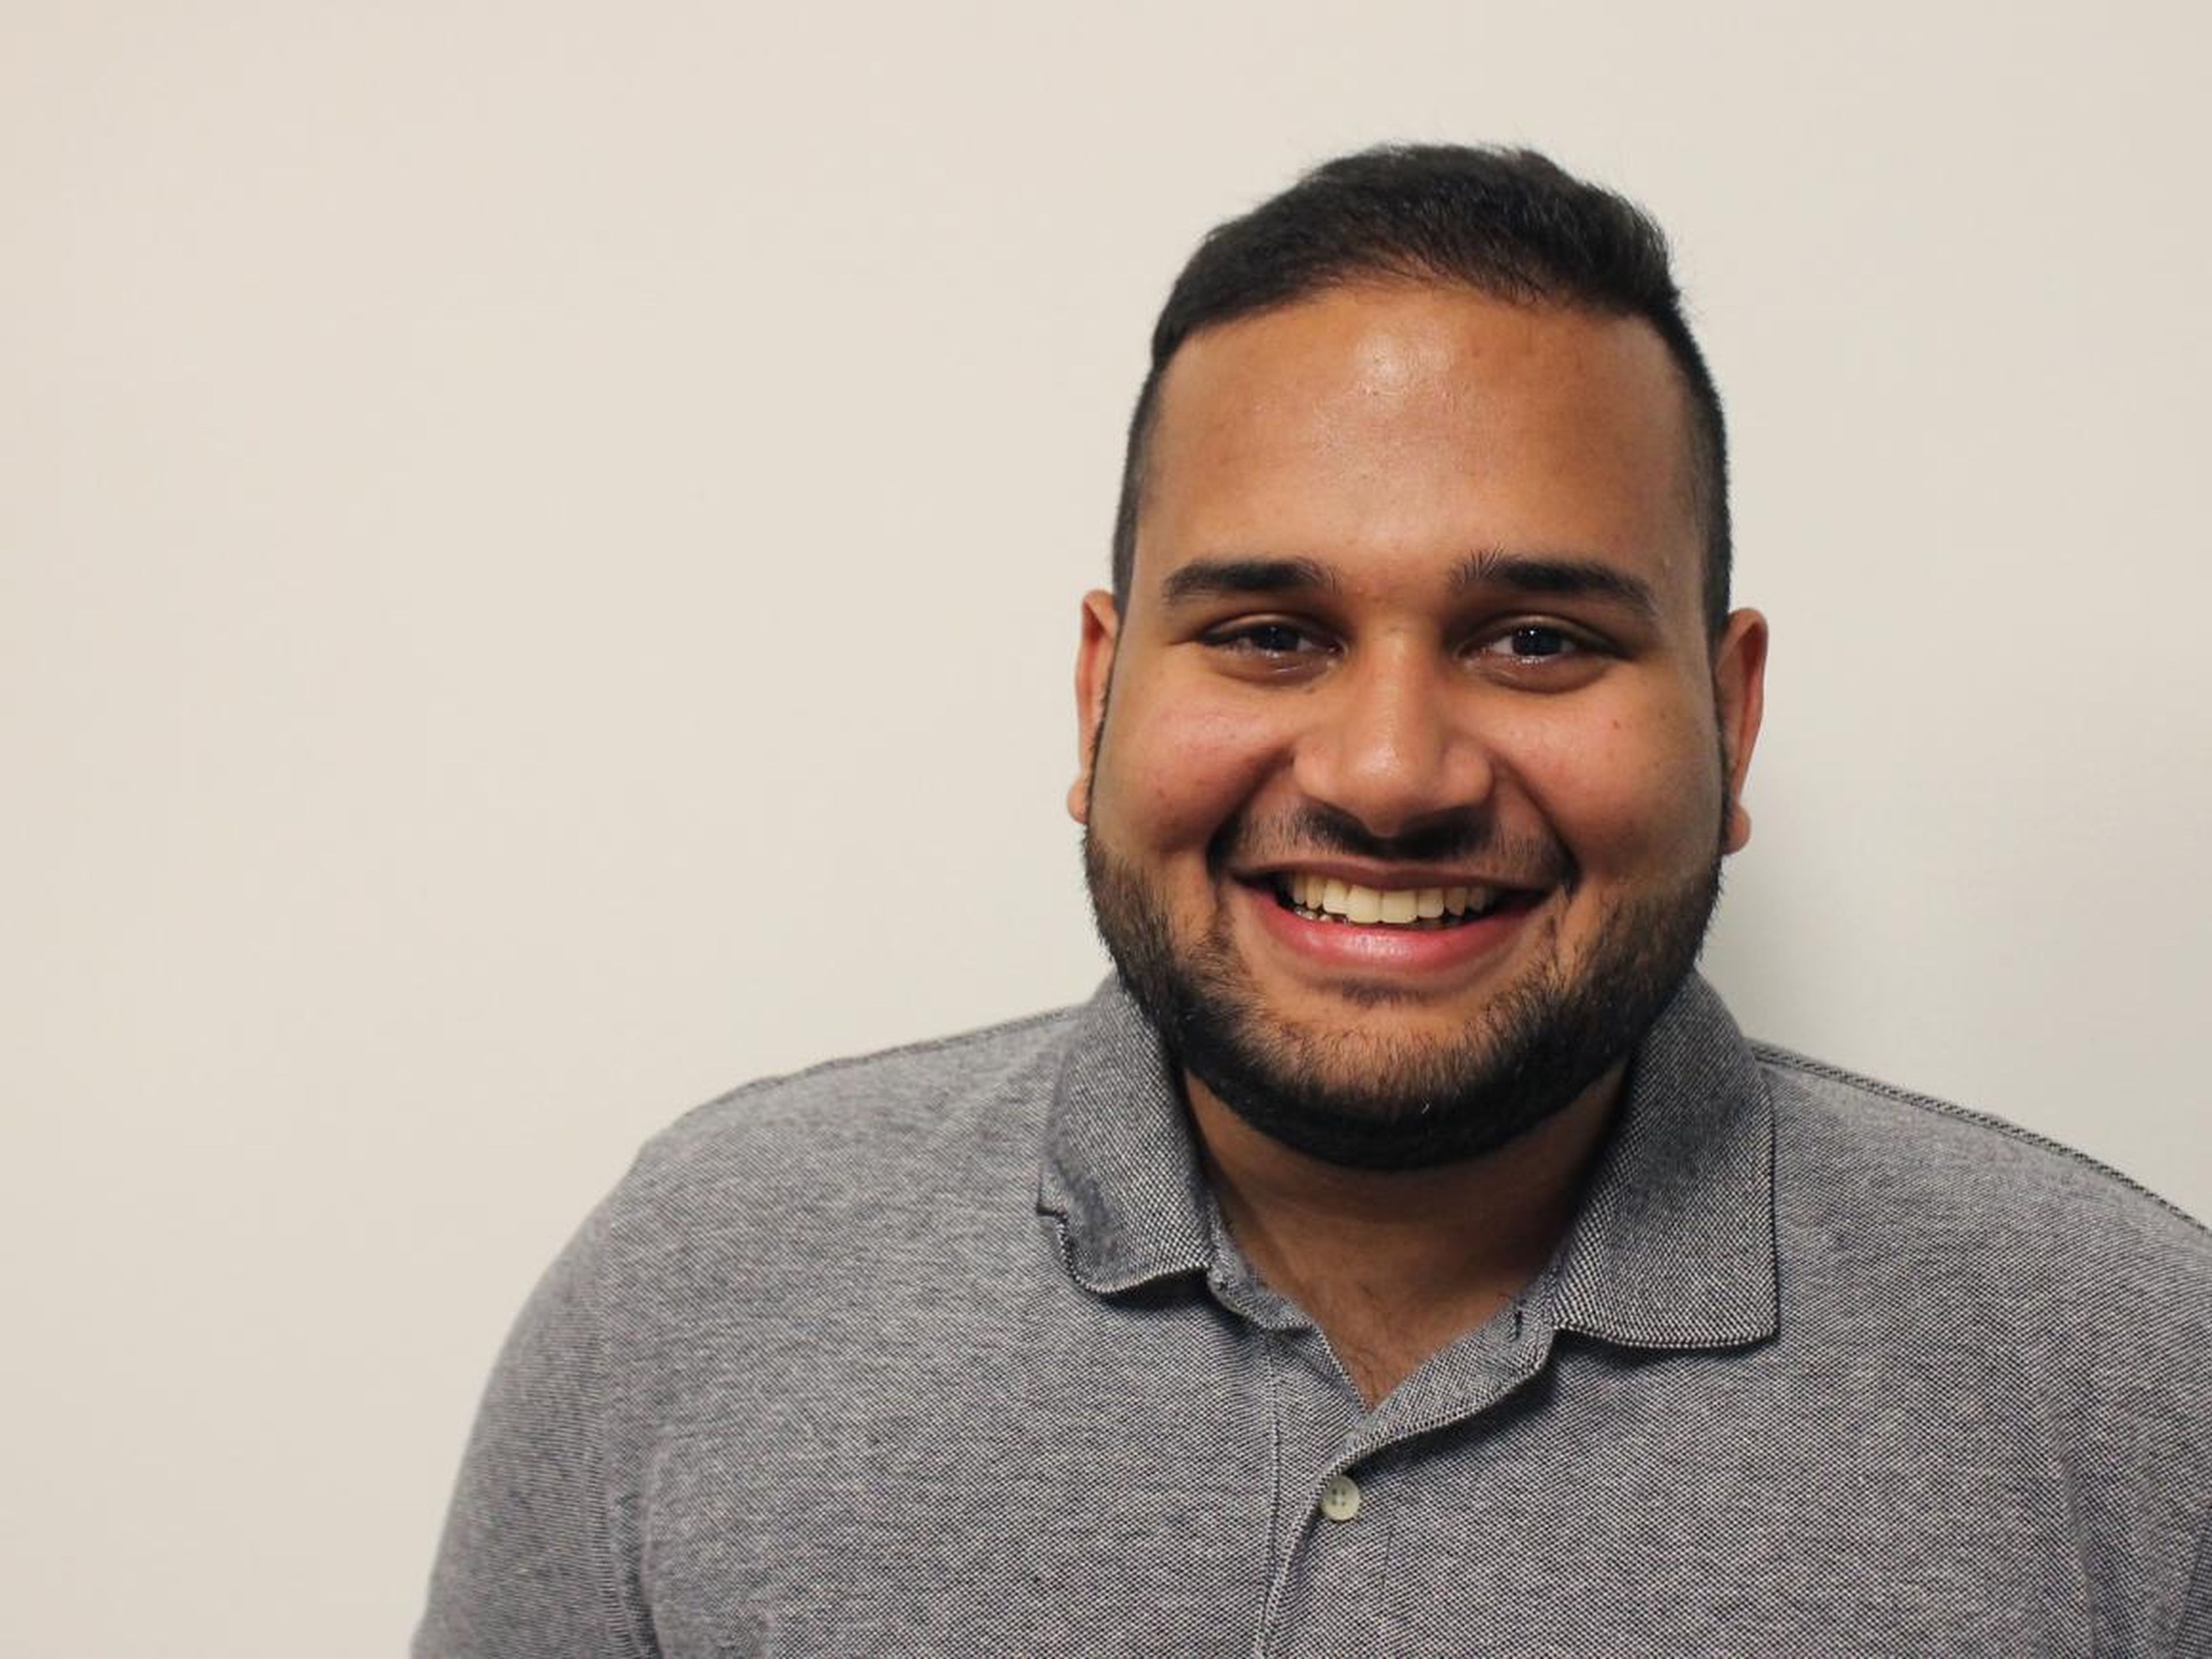 Este es Danial Hussain. Estudia en la Universidad de Virginia y trabaja como ingeniero de software en prácticas en Facebook en Menlo Park, California.